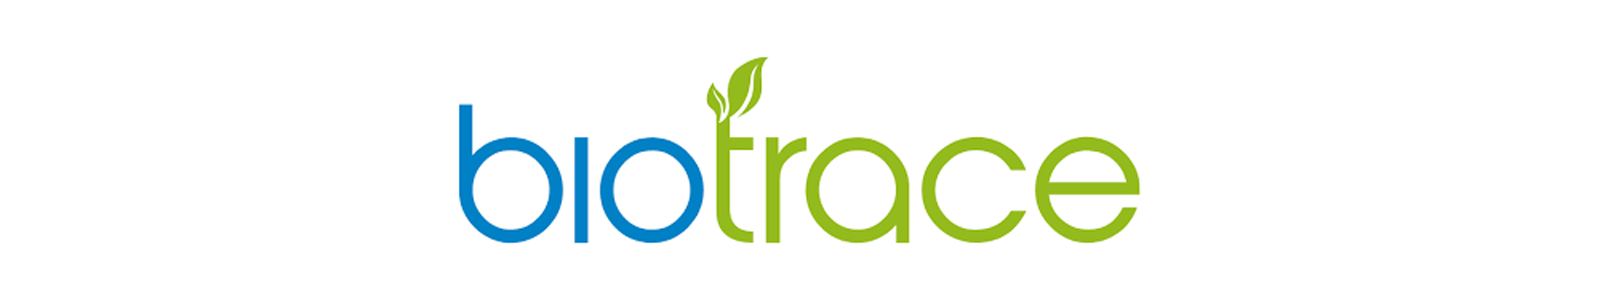 Brands - BioTrace